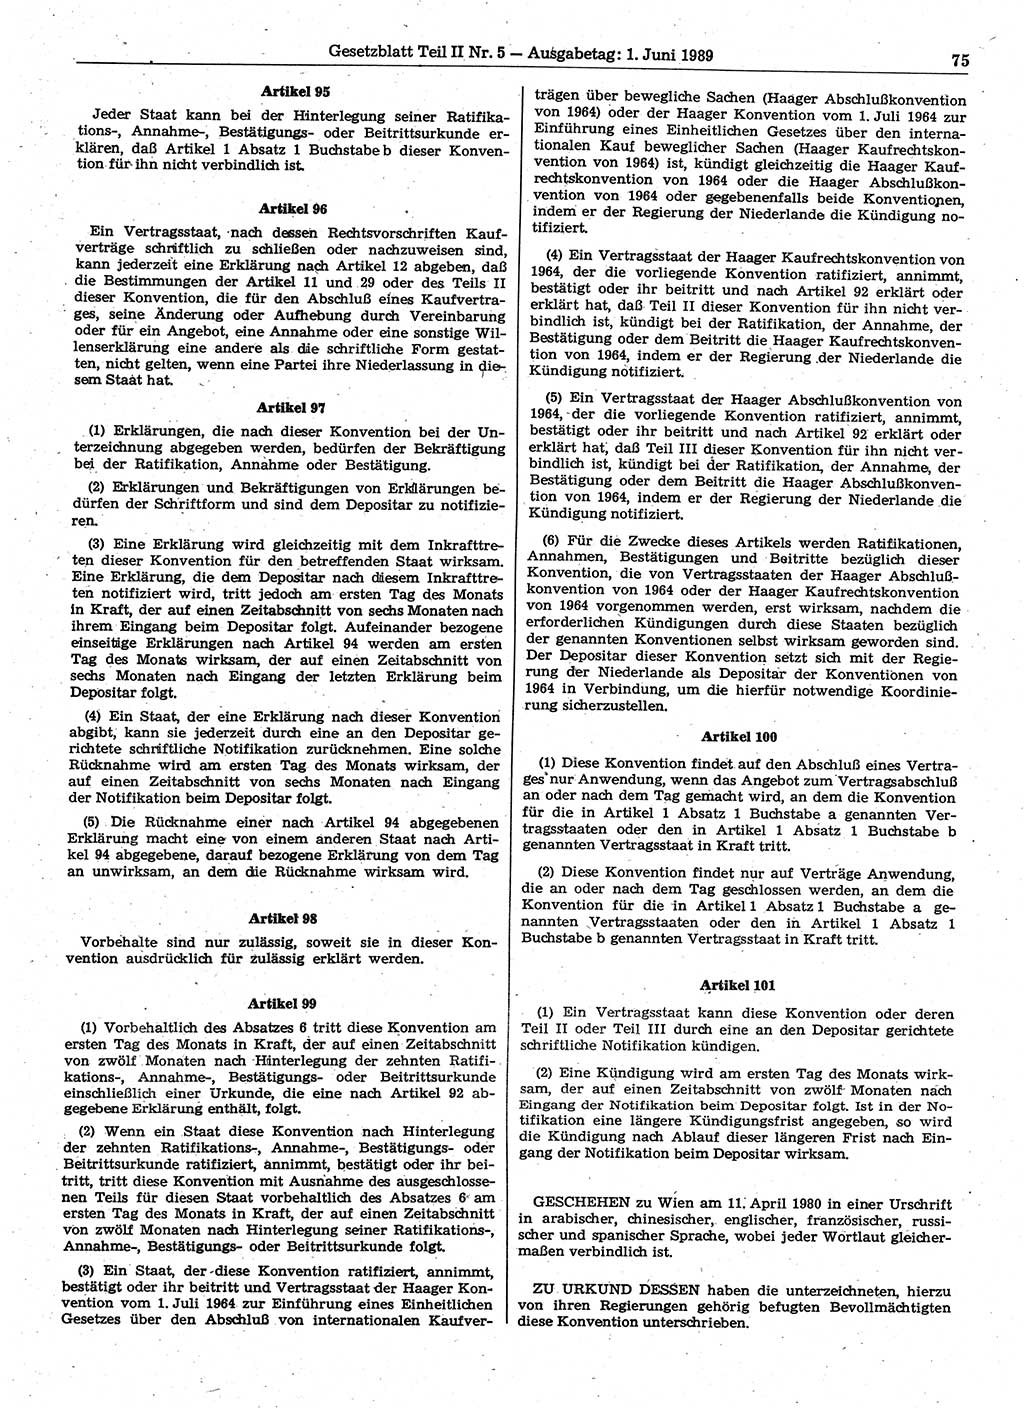 Gesetzblatt (GBl.) der Deutschen Demokratischen Republik (DDR) Teil ⅠⅠ 1989, Seite 75 (GBl. DDR ⅠⅠ 1989, S. 75)